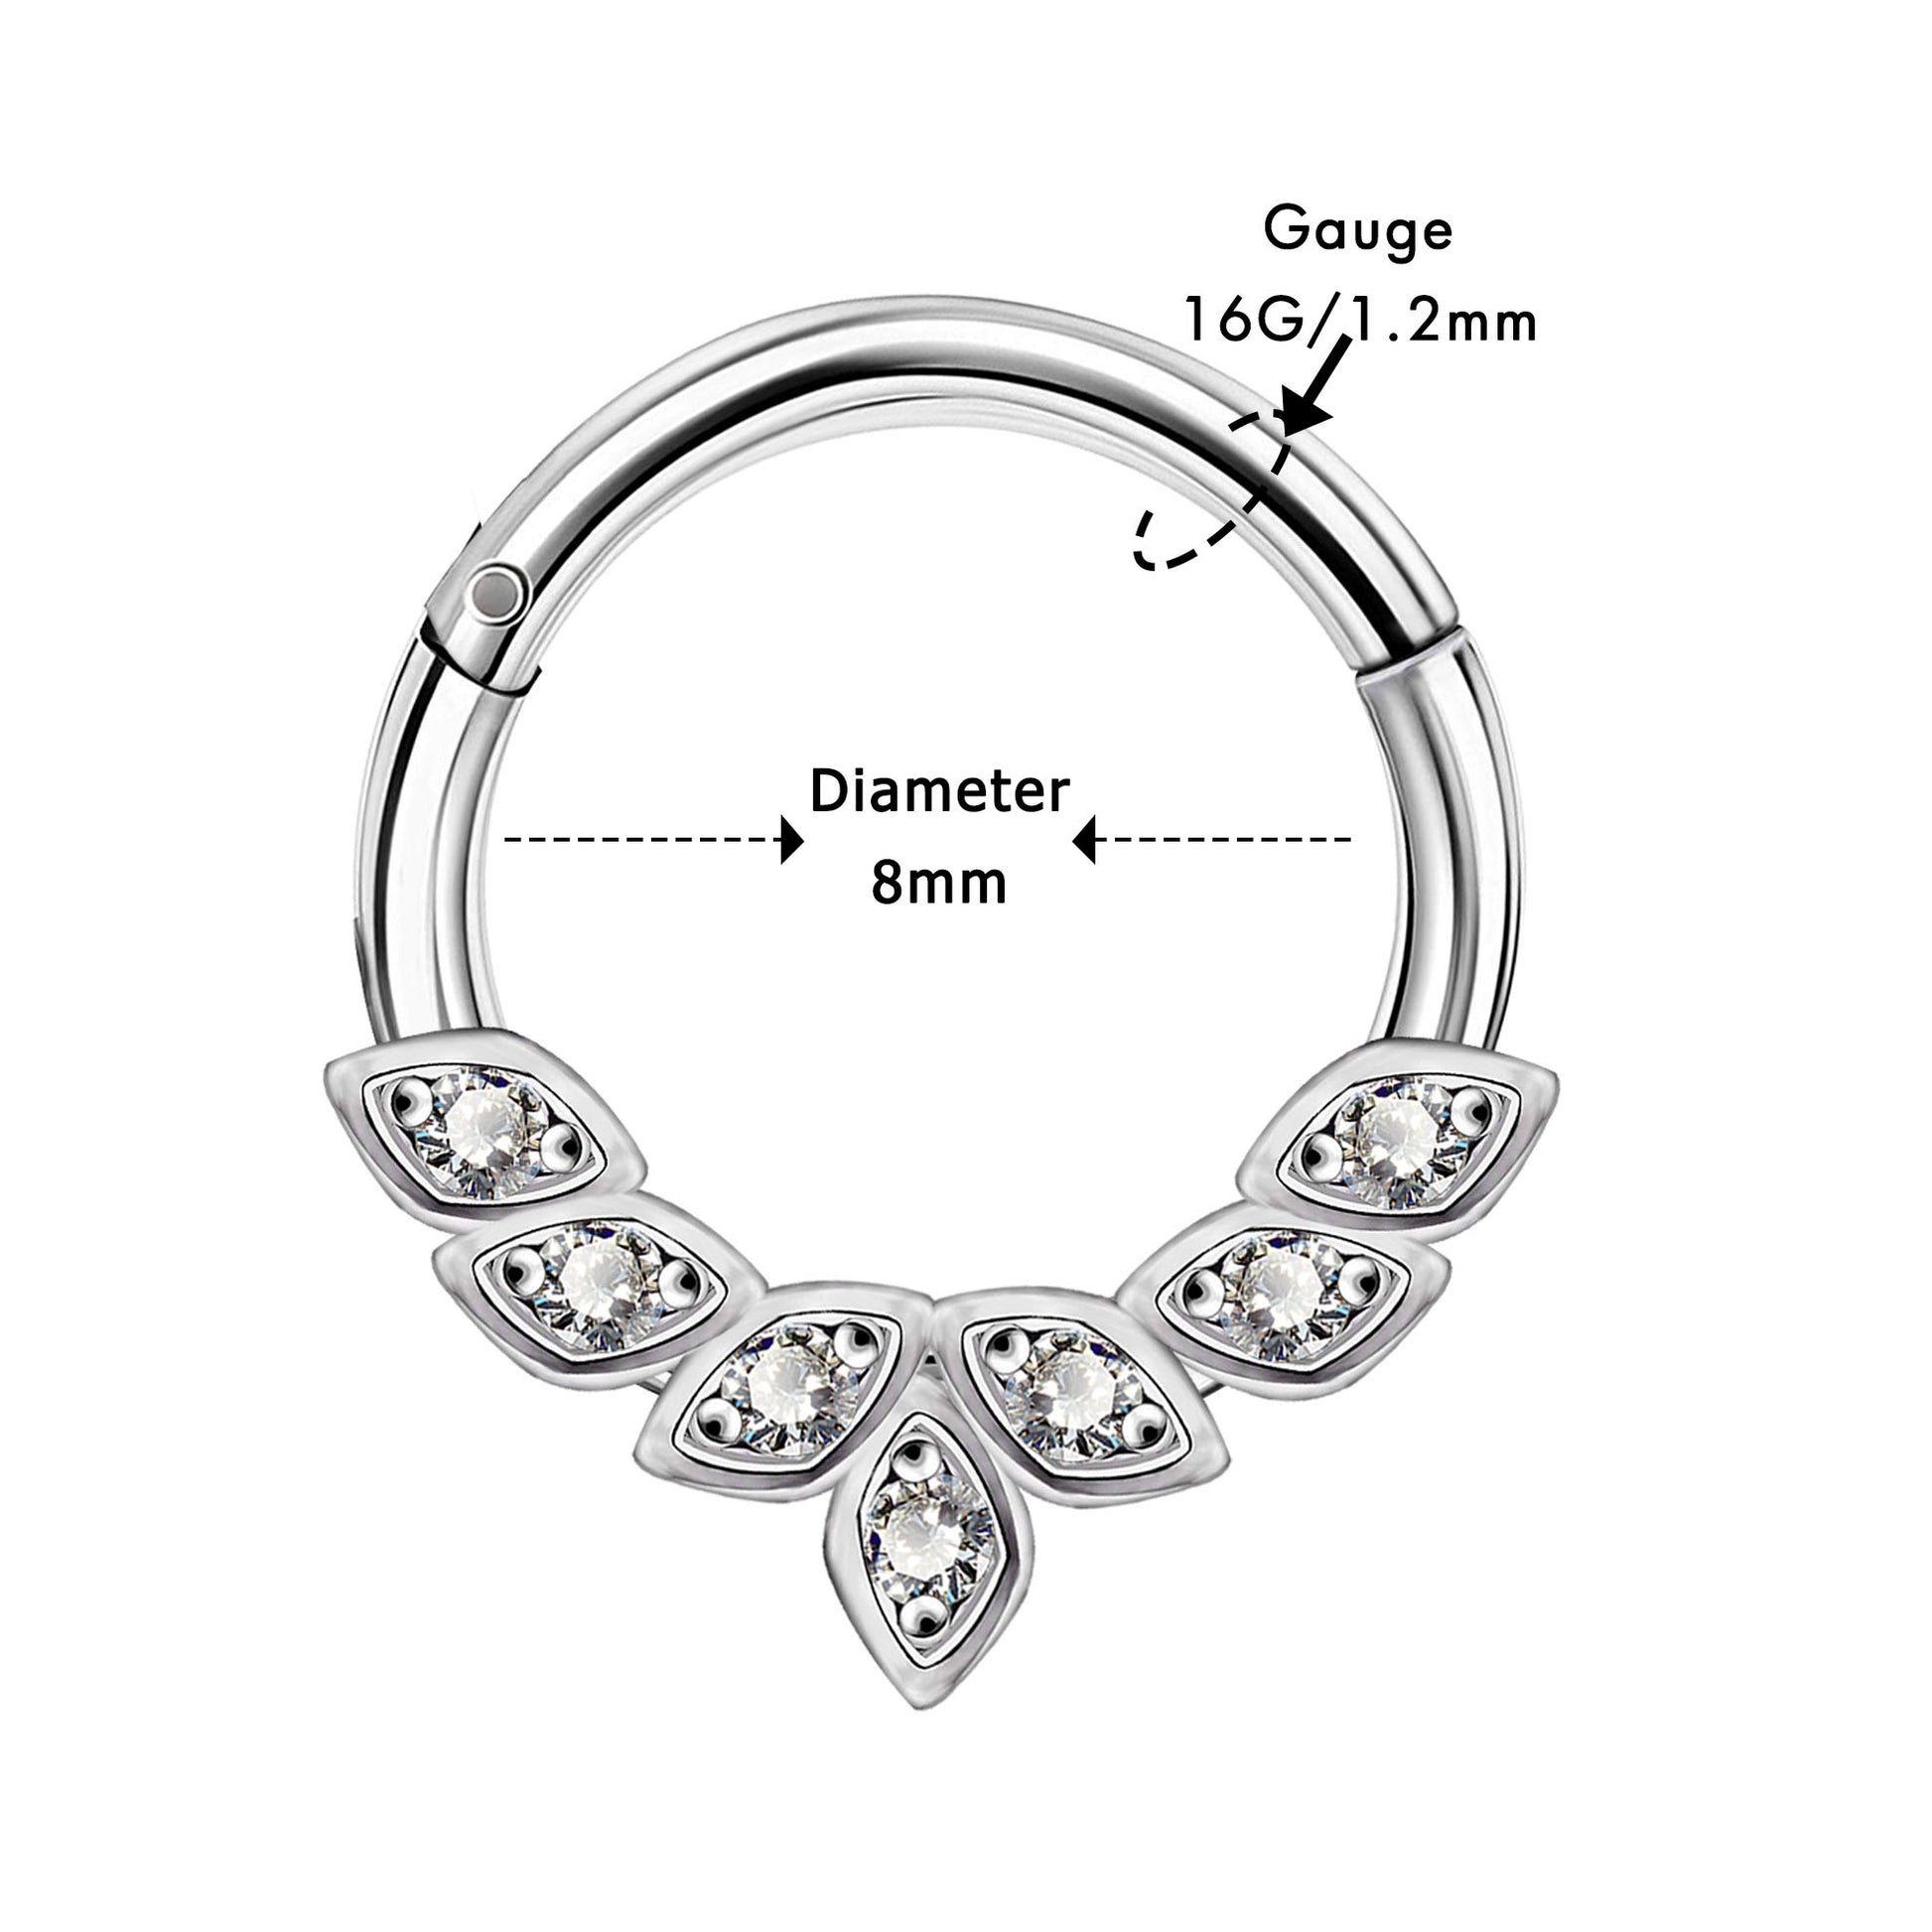 8mm daith earrings diamond